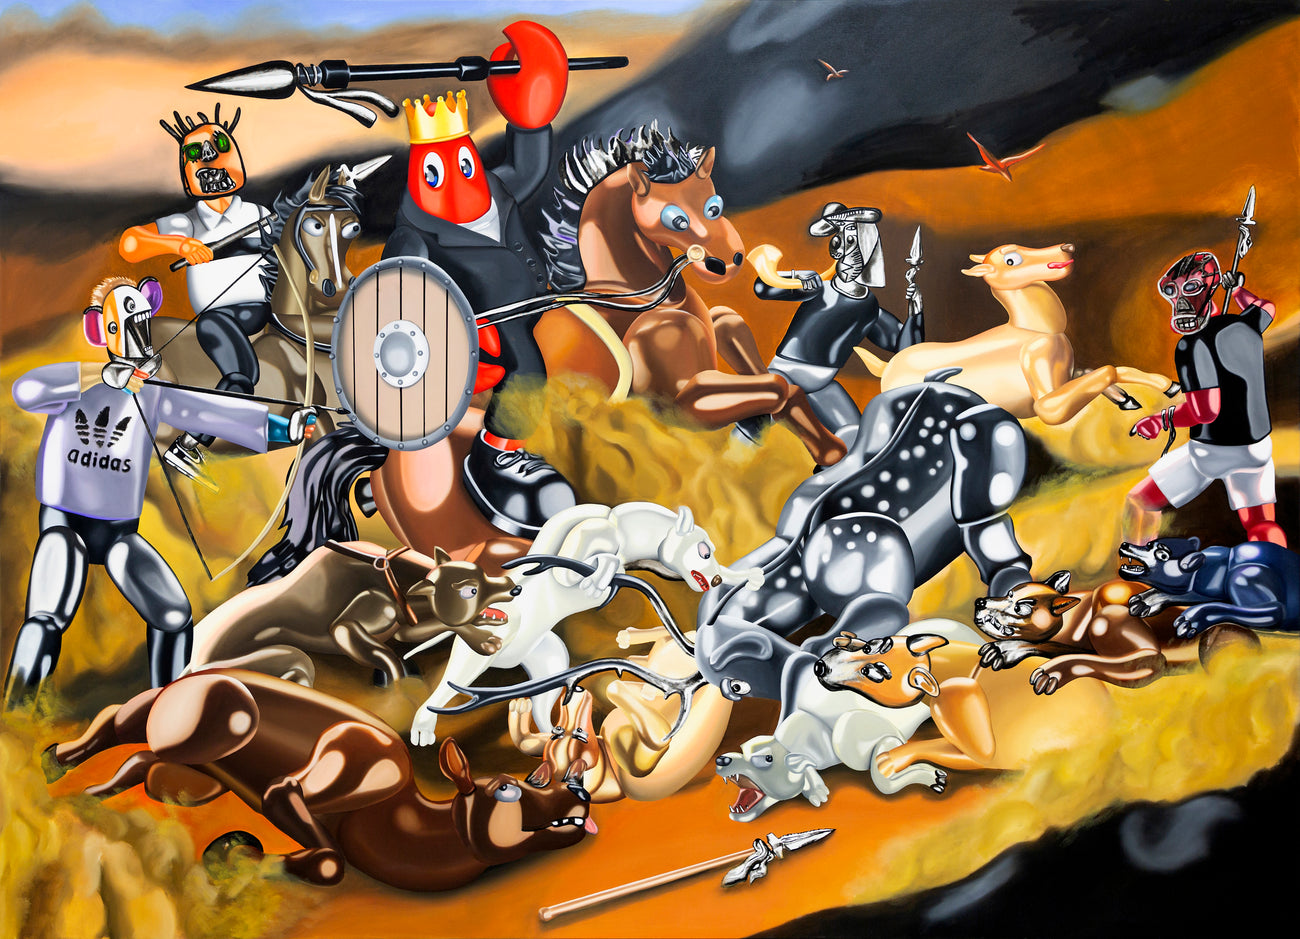 狩獵場景 II (2020), PHILIP COLBERT, 2020Oil and acrylic on canvas195.0 x 270.0 x 4.5 cm